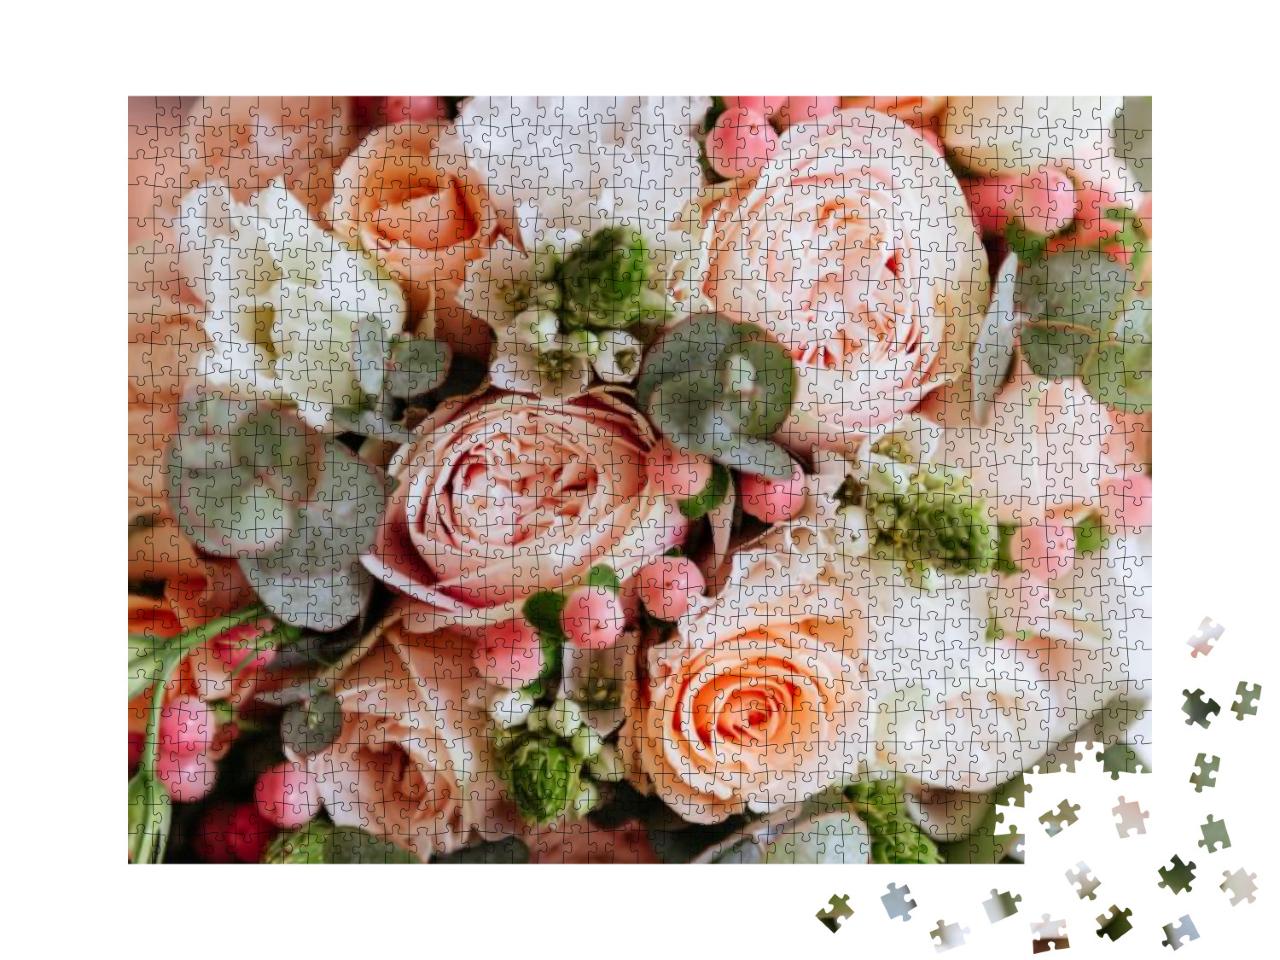 Puzzle 1000 Teile „Hochzeitsblumen “